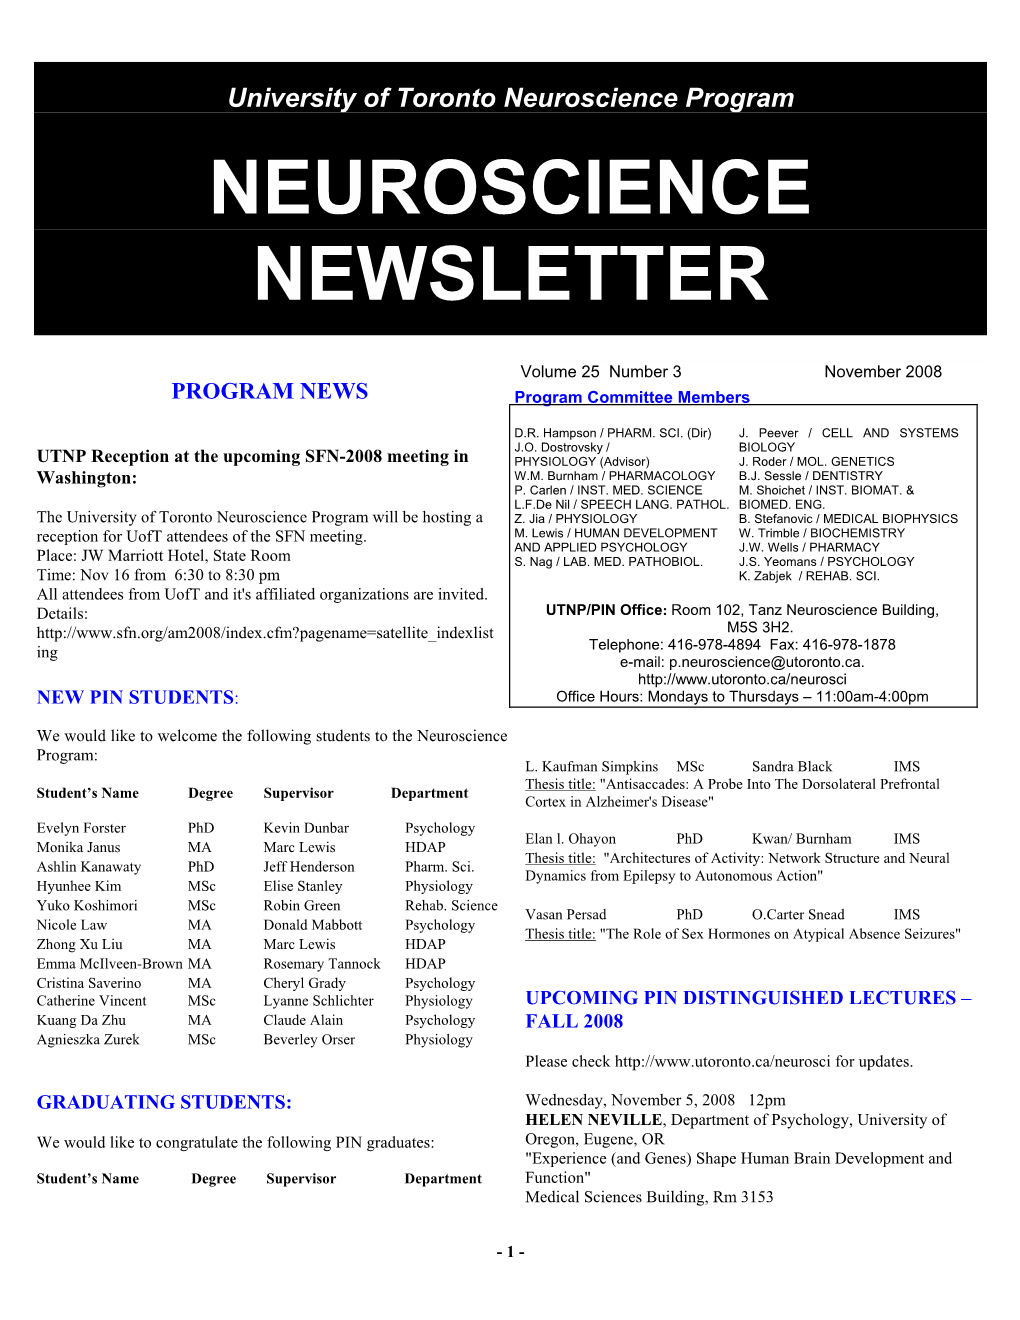 Neuroscience Newsletter